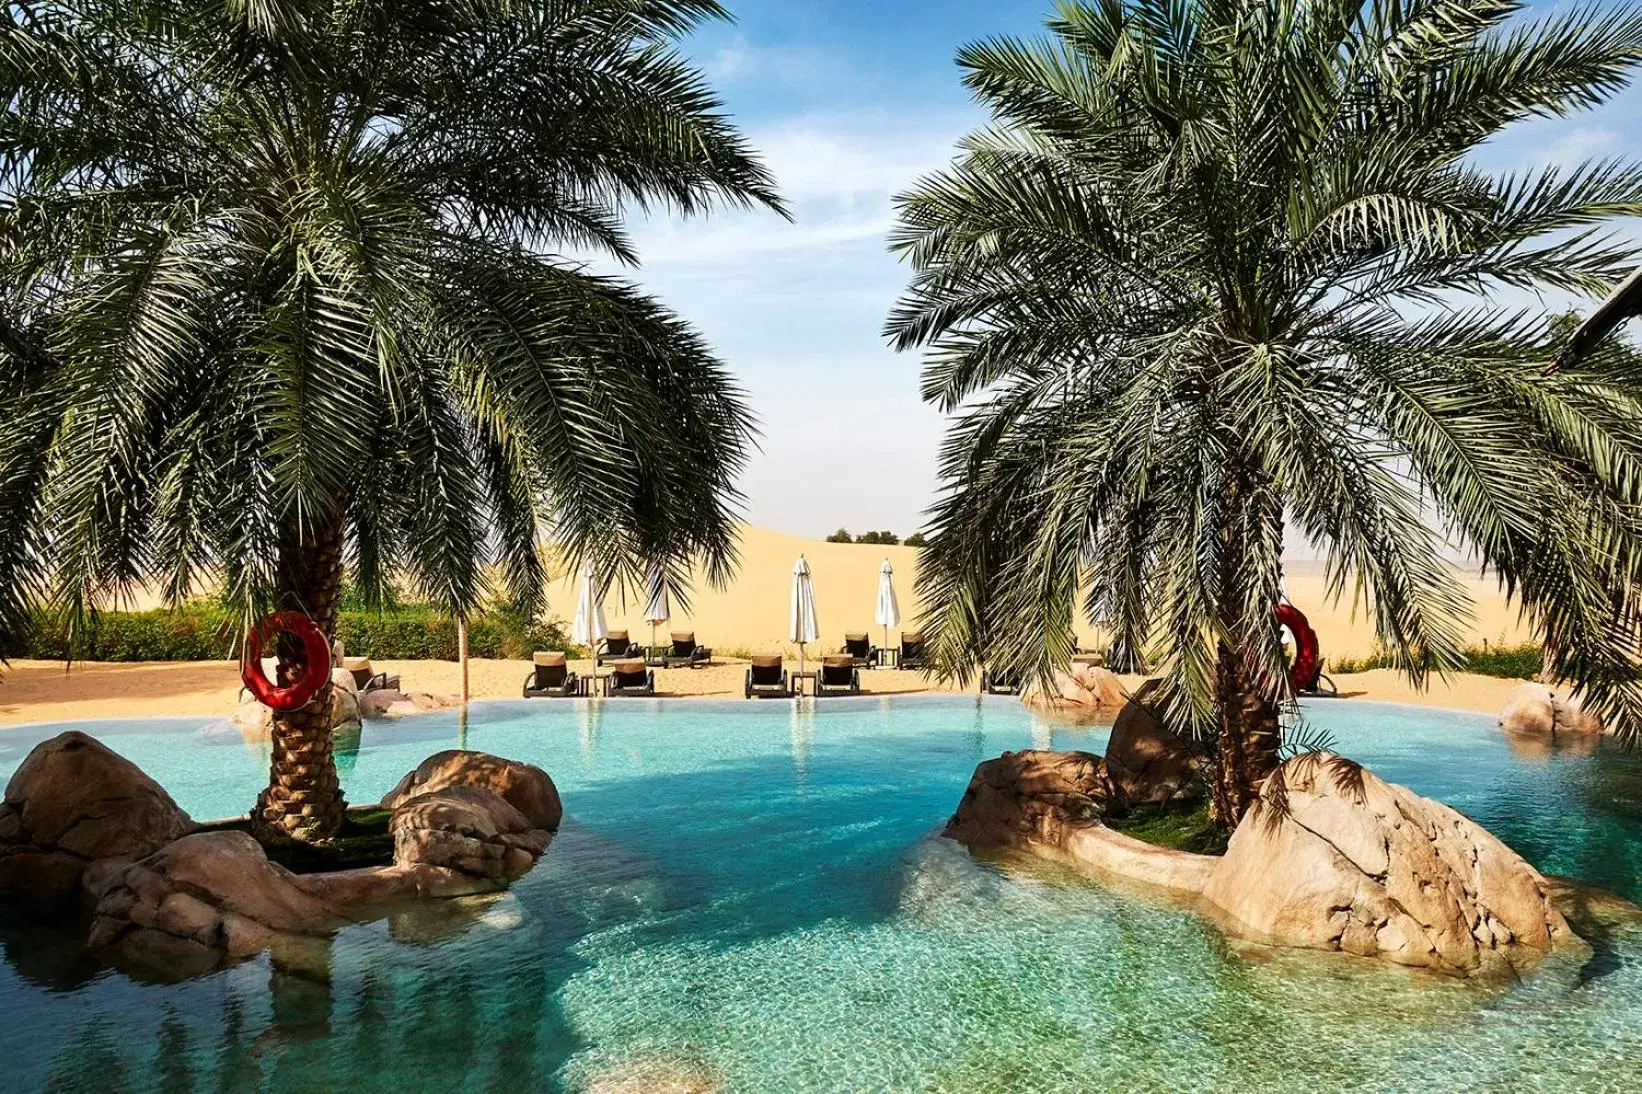 Swimming Pool in Telal Resort Al Ain